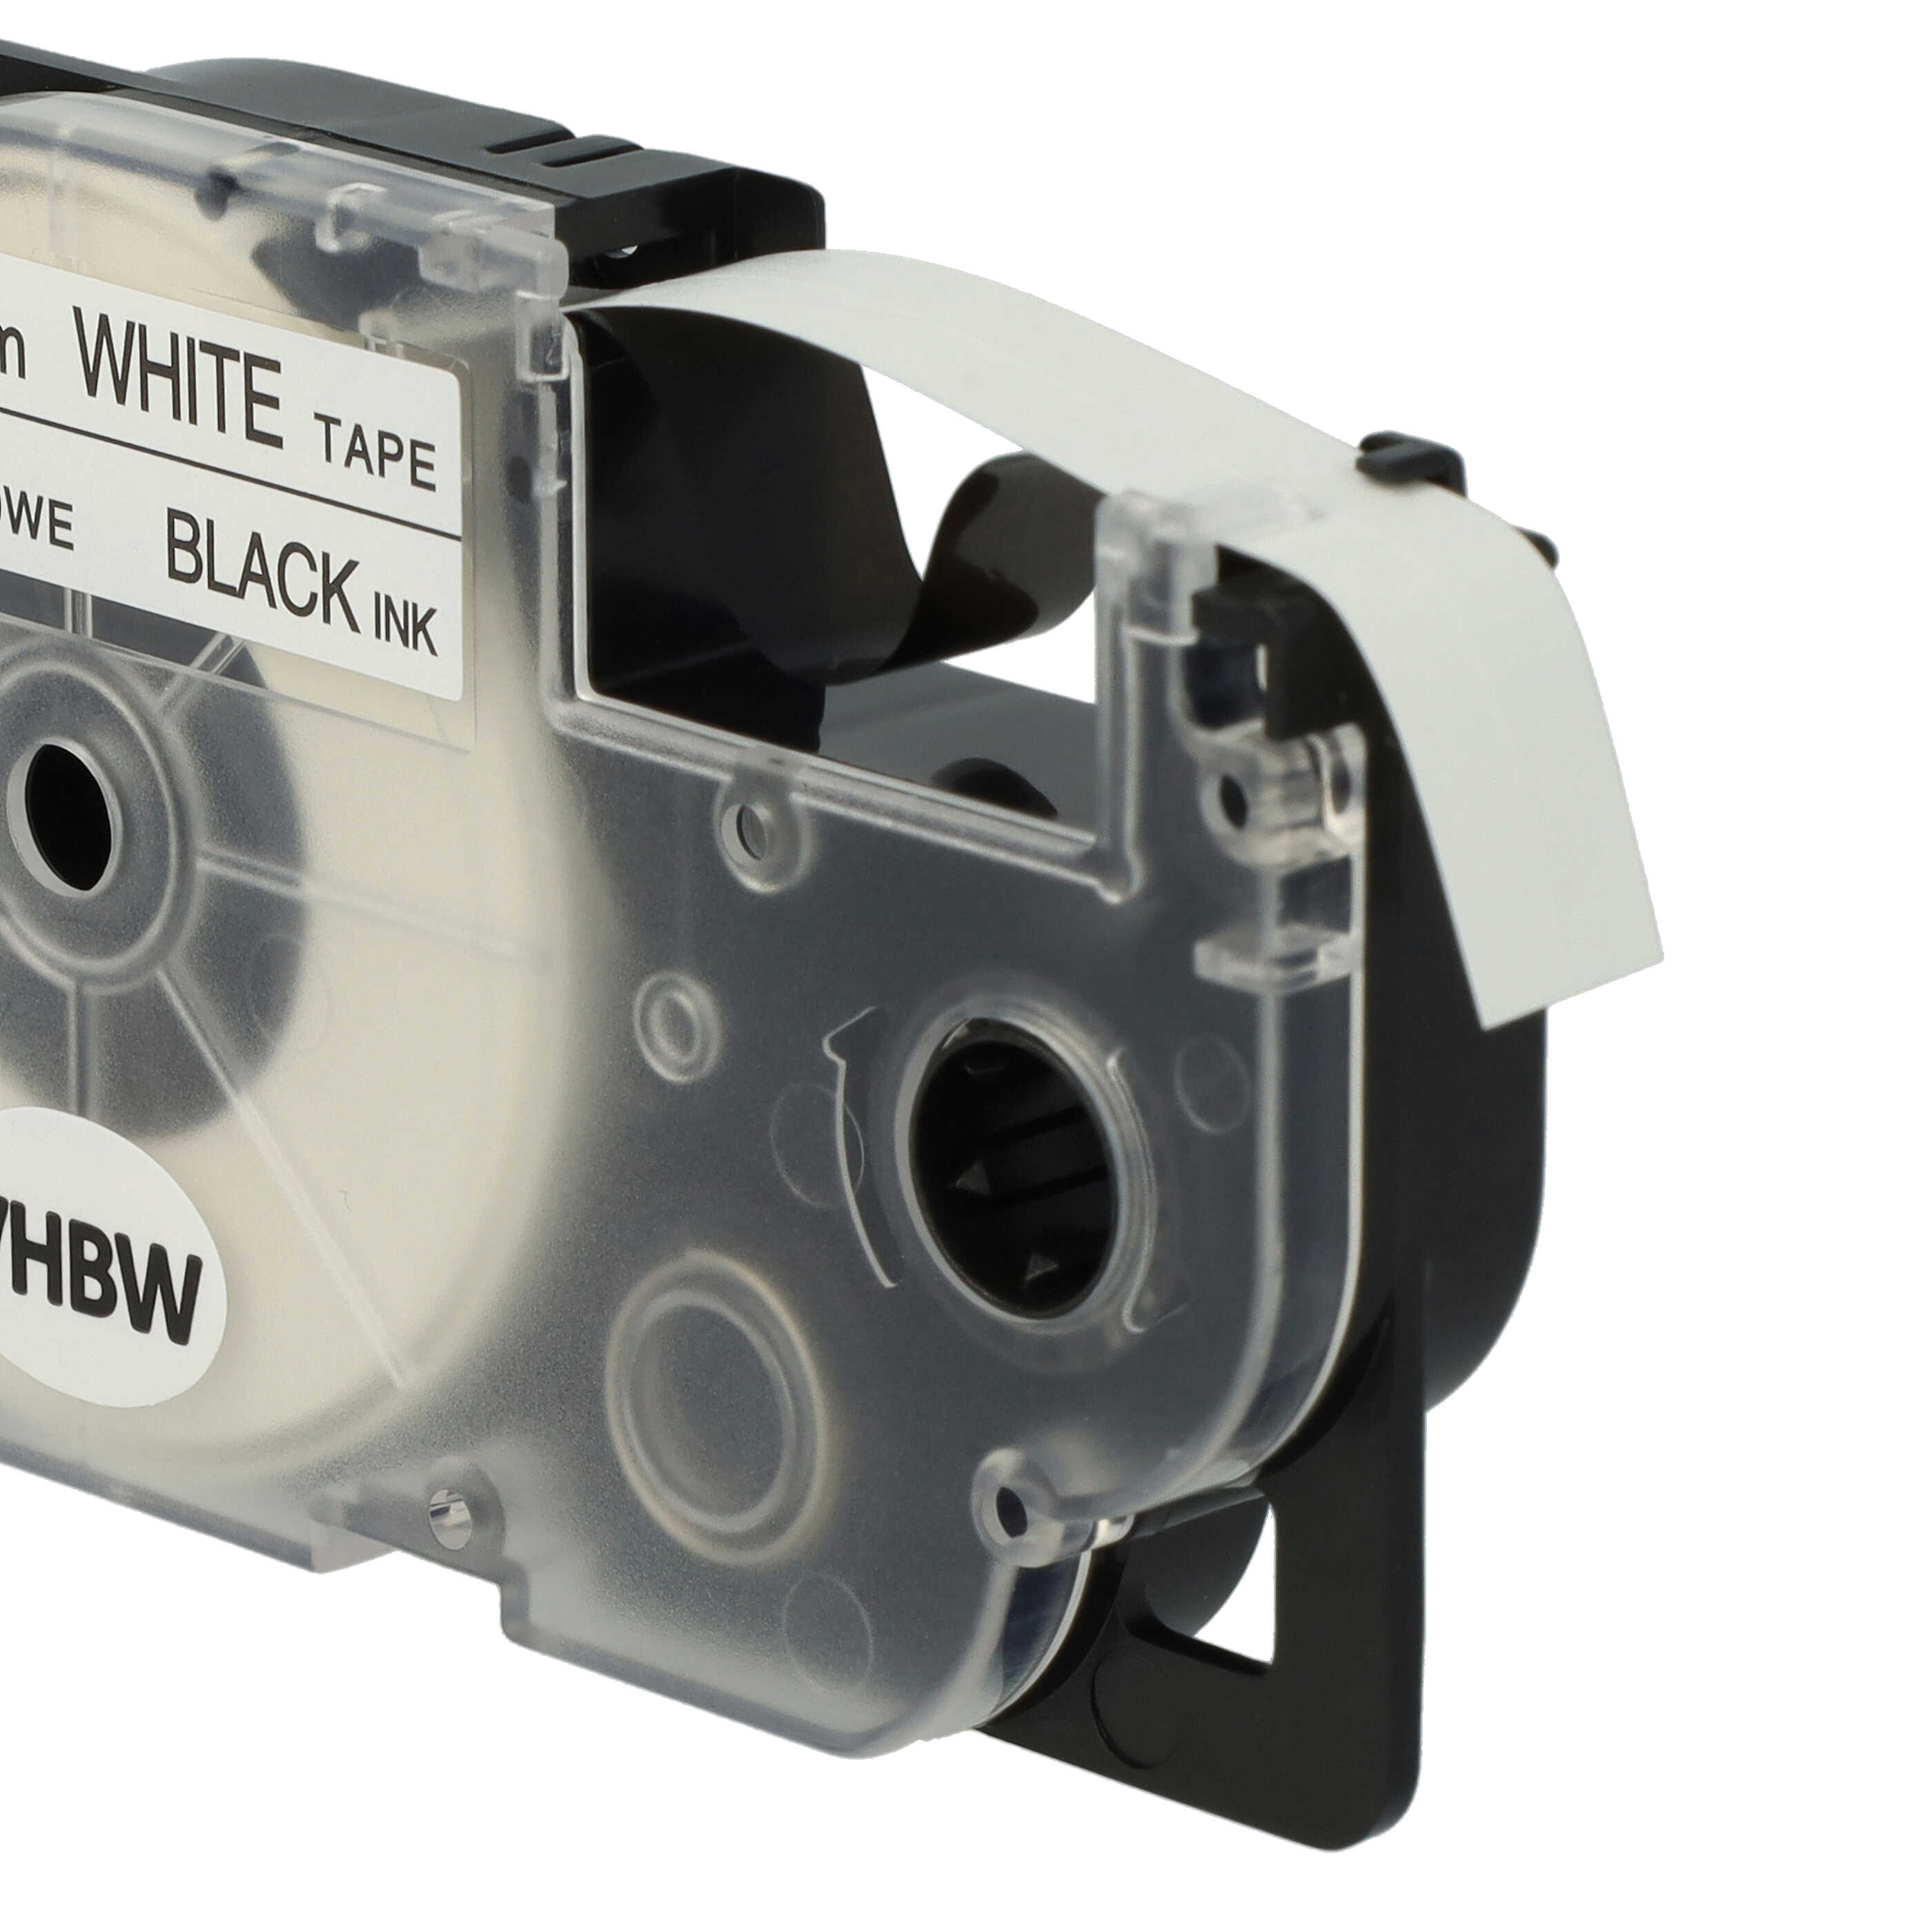 10x Casete cinta escritura reemplaza Casio XR-9WE1 Negro su Blanco